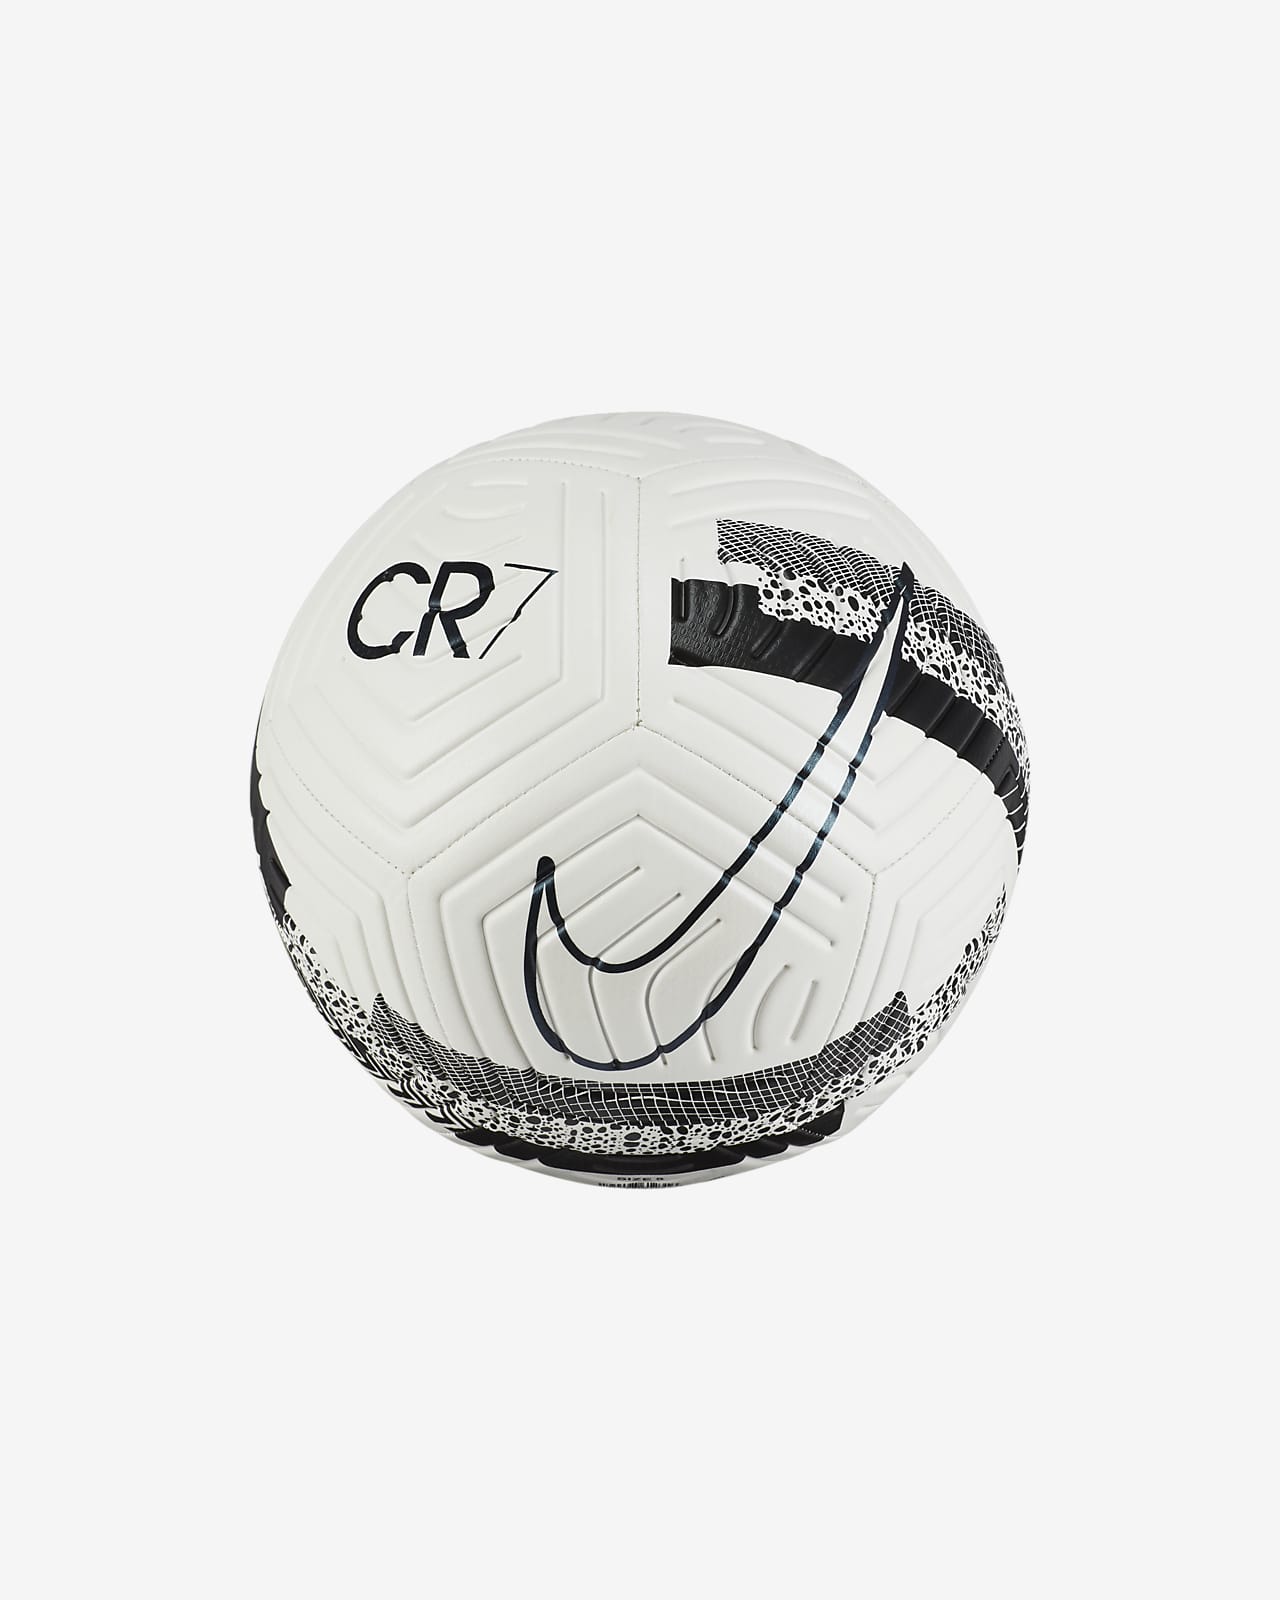 Nike公式 ナイキ ストライク Cr7 サッカーボール オンラインストア 通販サイト